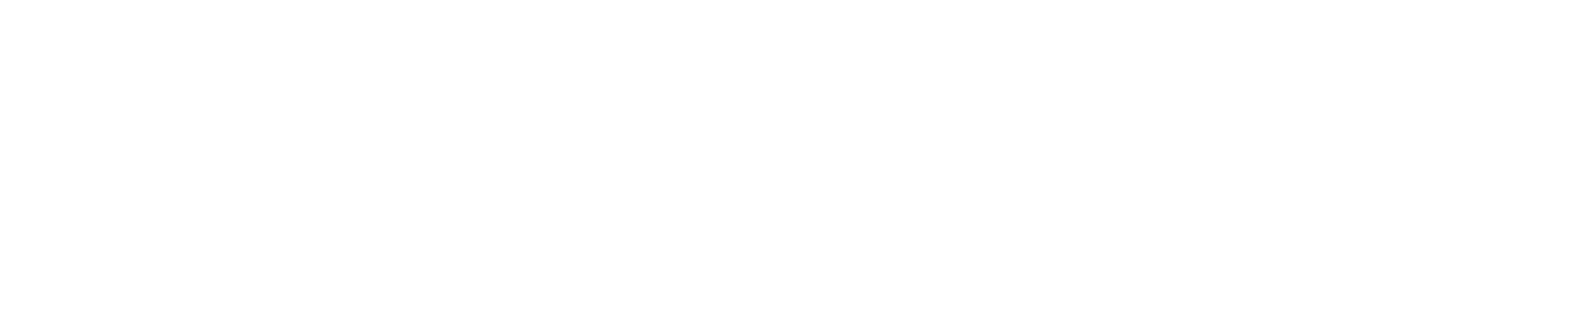 TC Bancshares logo large for dark backgrounds (transparent PNG)